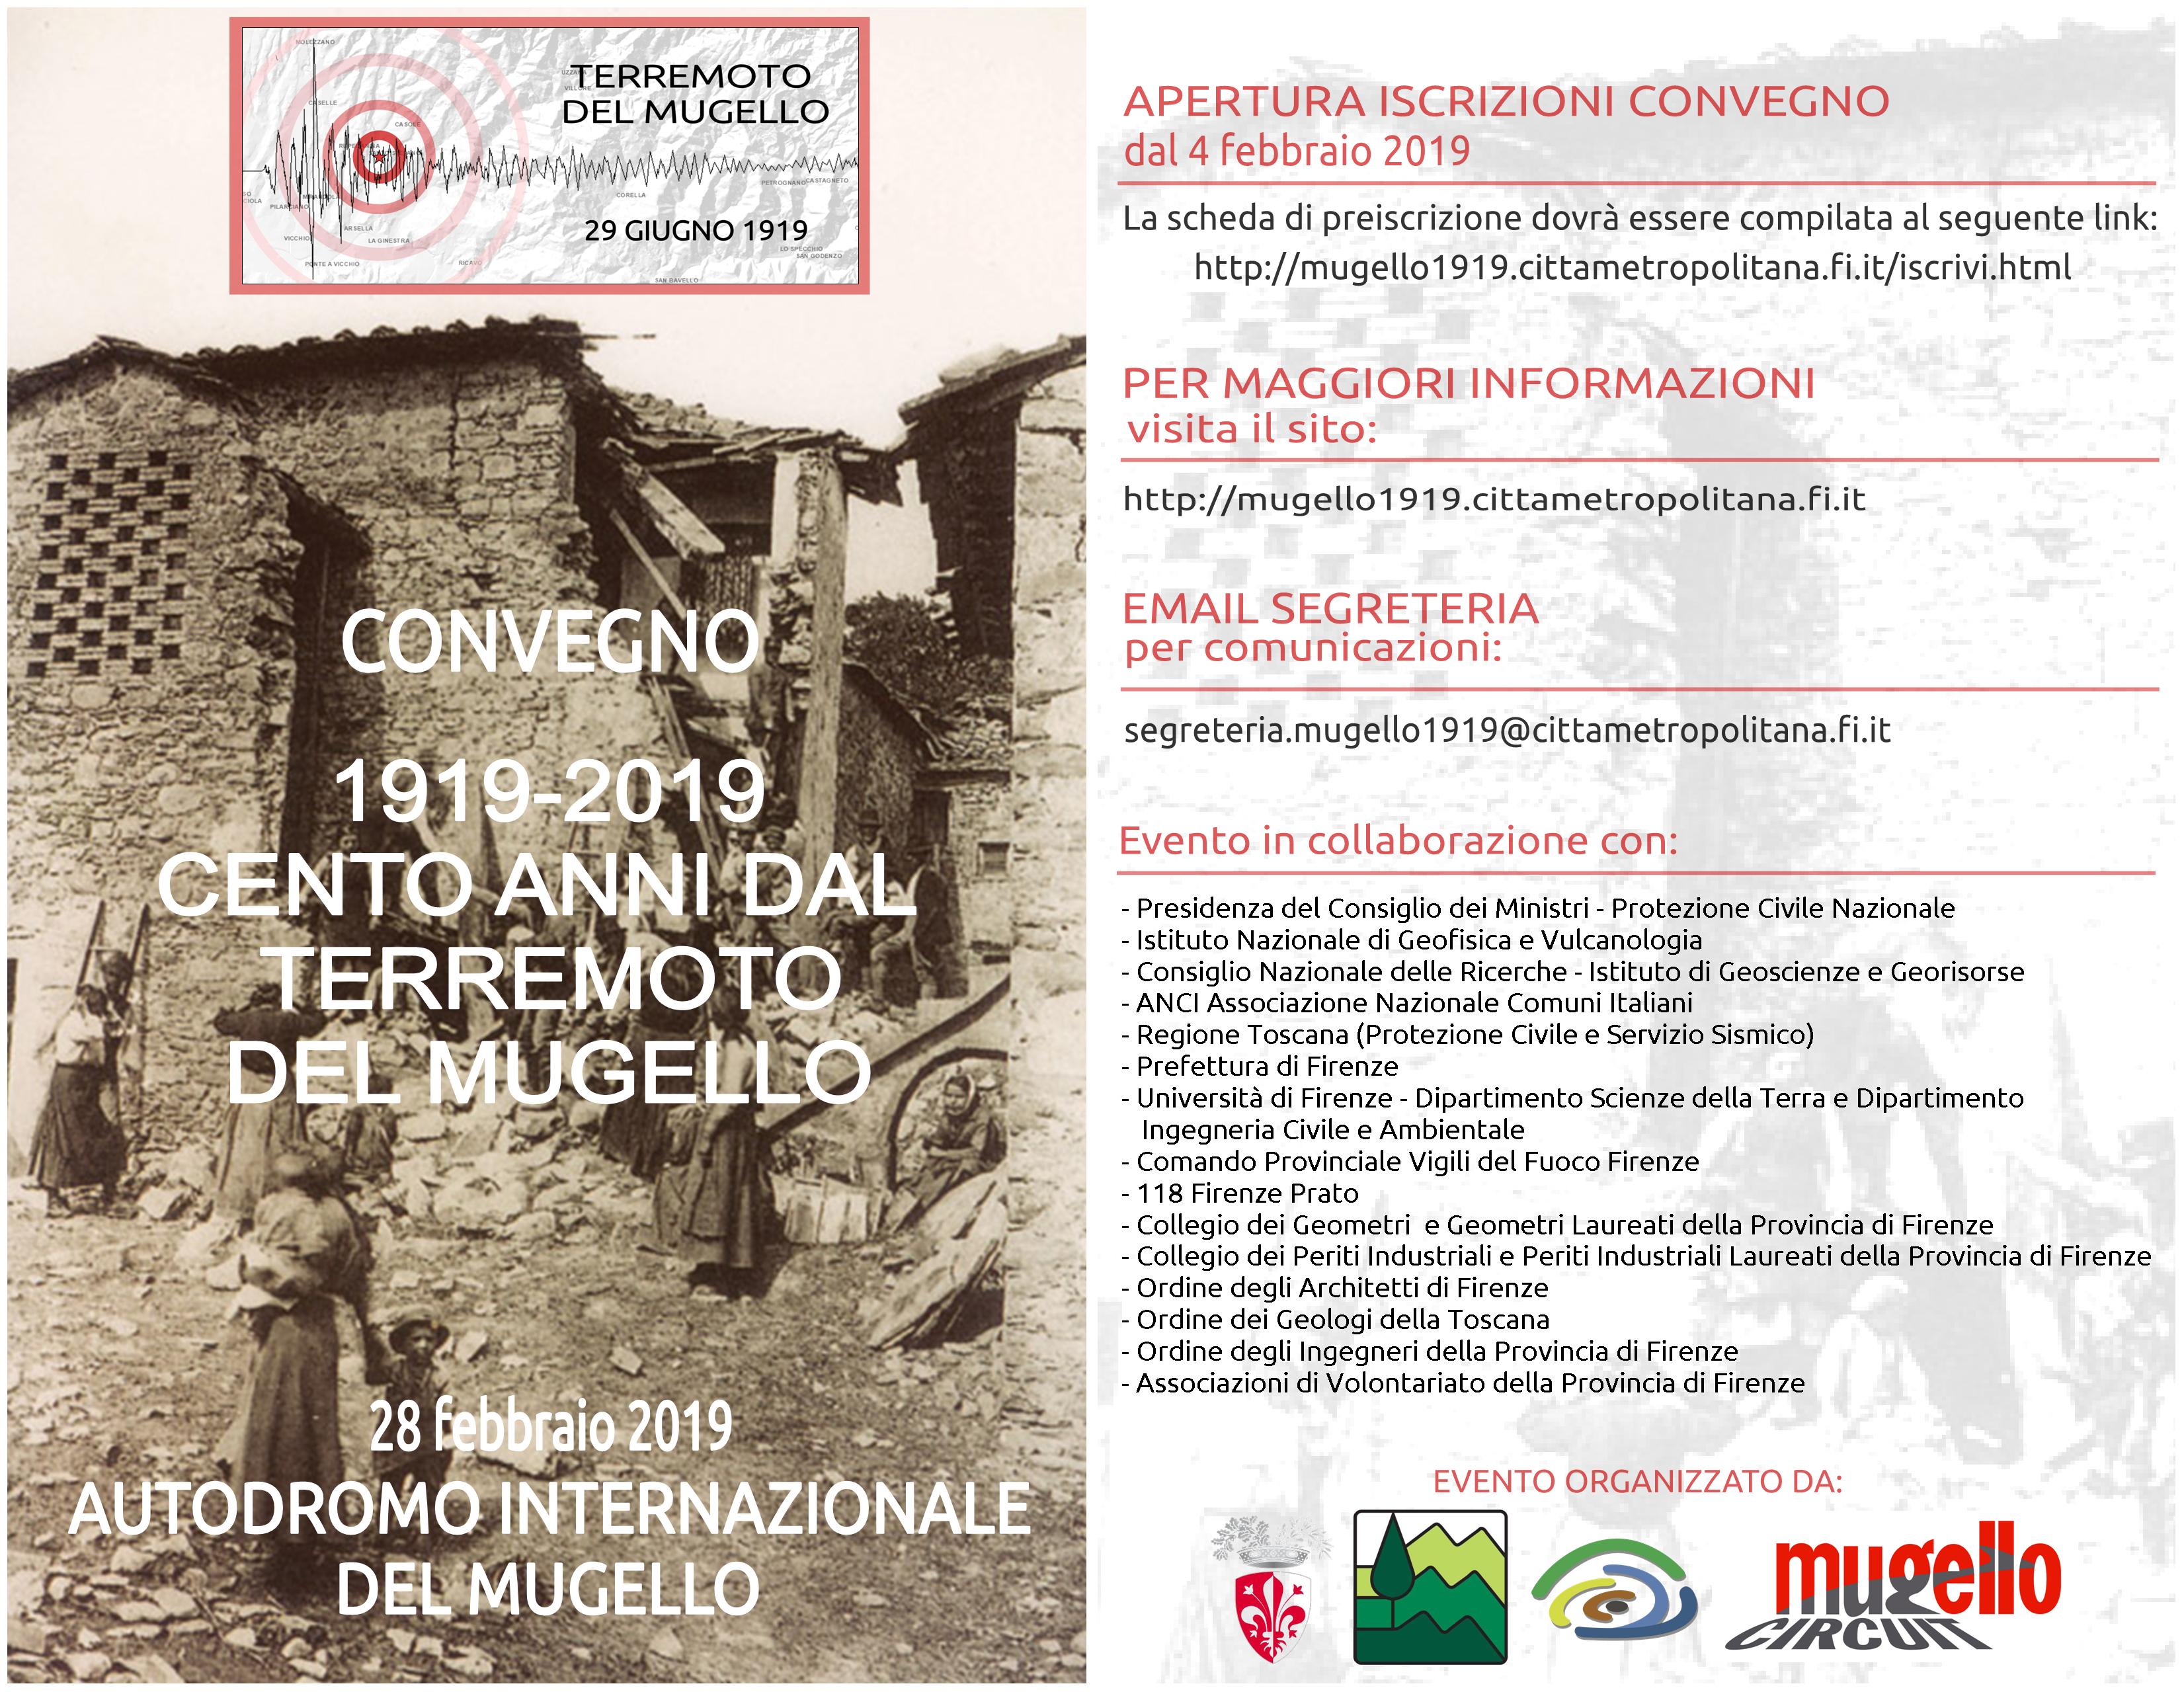 Il programma del convegno sui cento anni dal terremoto in Mugello (fronte)